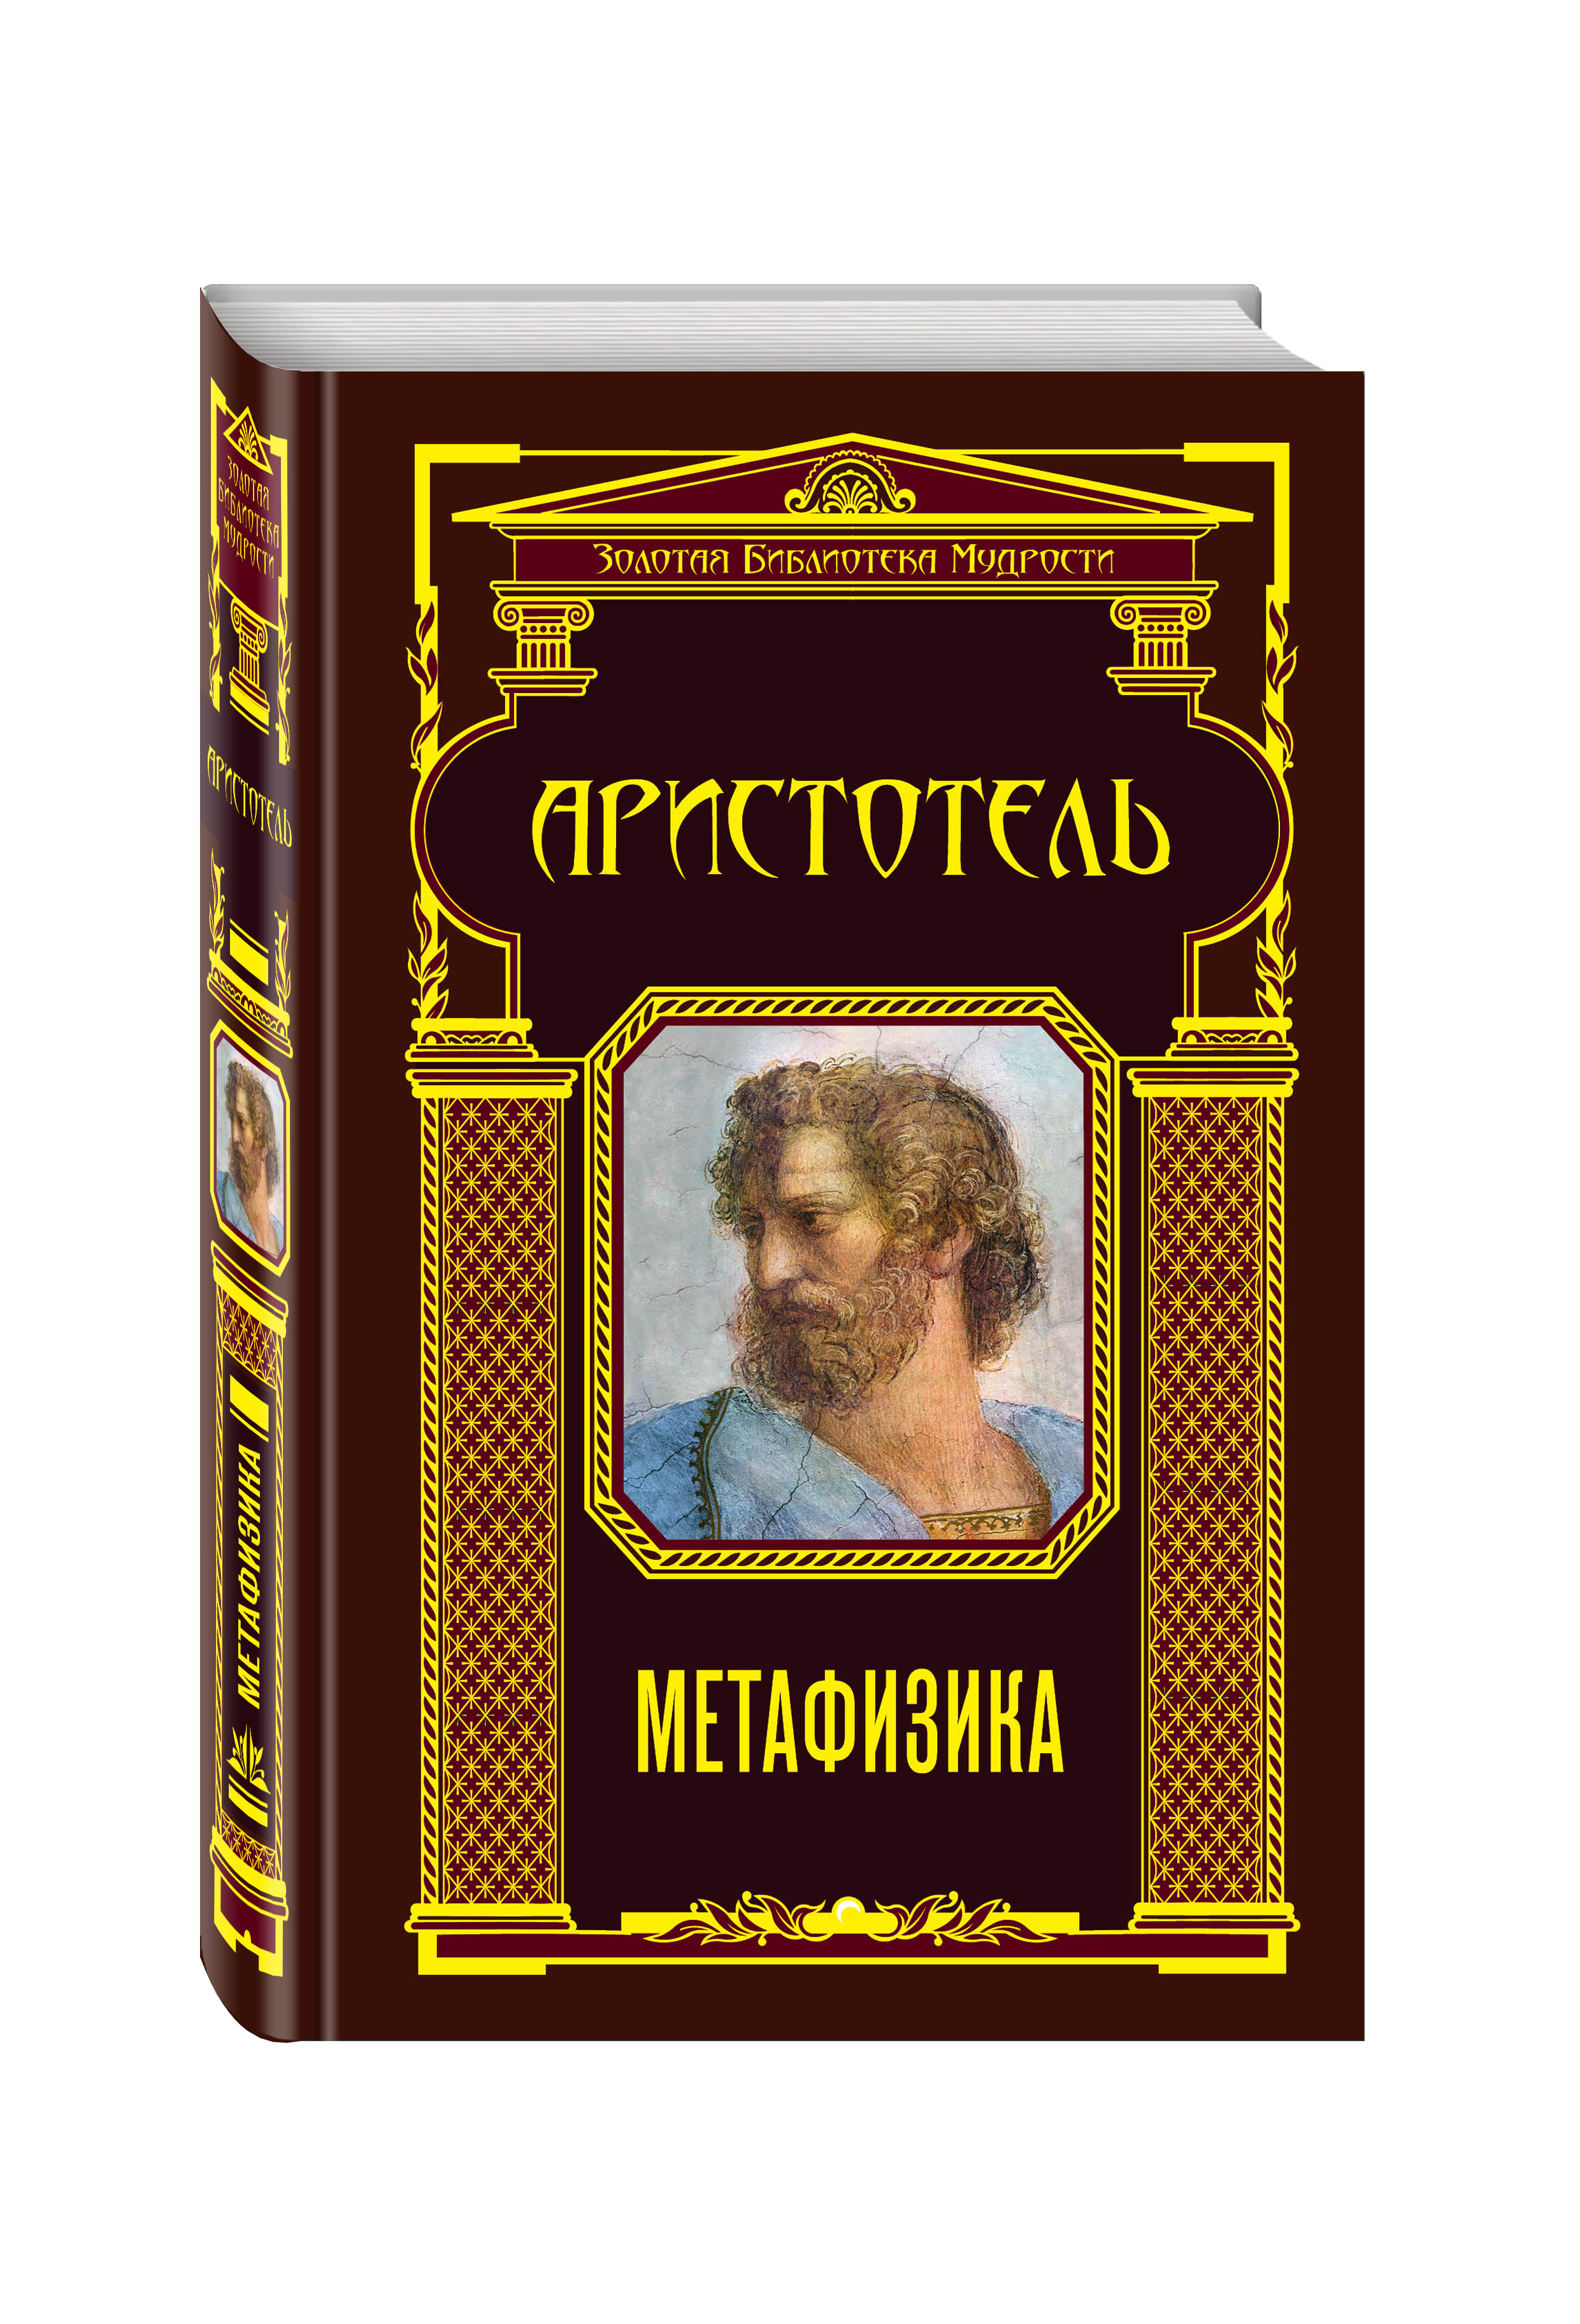 Аристотель книга 1. Метафизика ( Аристотель ). Аристотель книги. Метафизика книга. Трактат о метафизике Аристотеля.